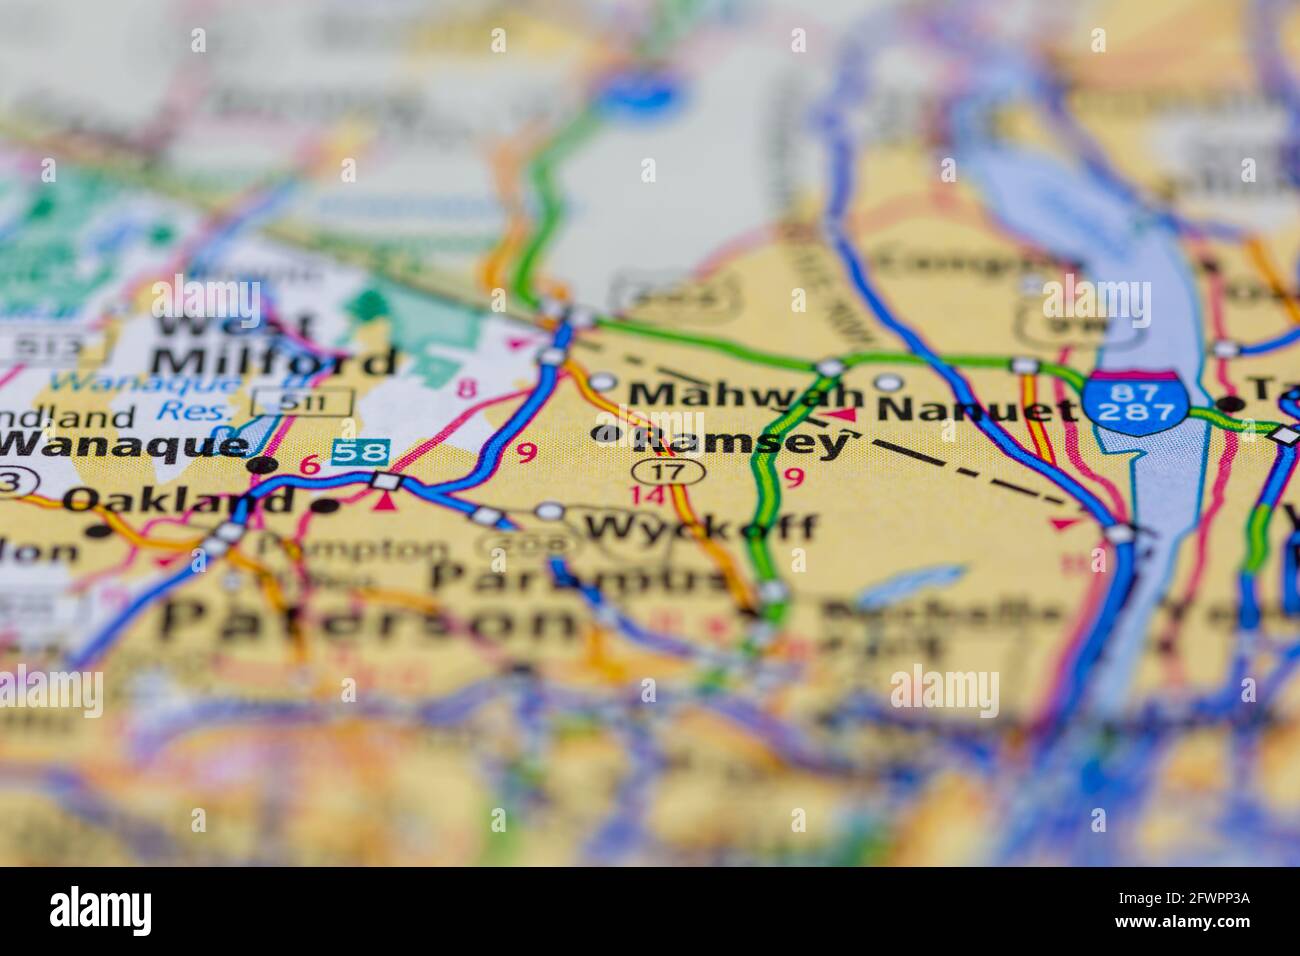 Ramsey New Jersey USA mostrado en un mapa geográfico o. hoja de ruta Foto de stock